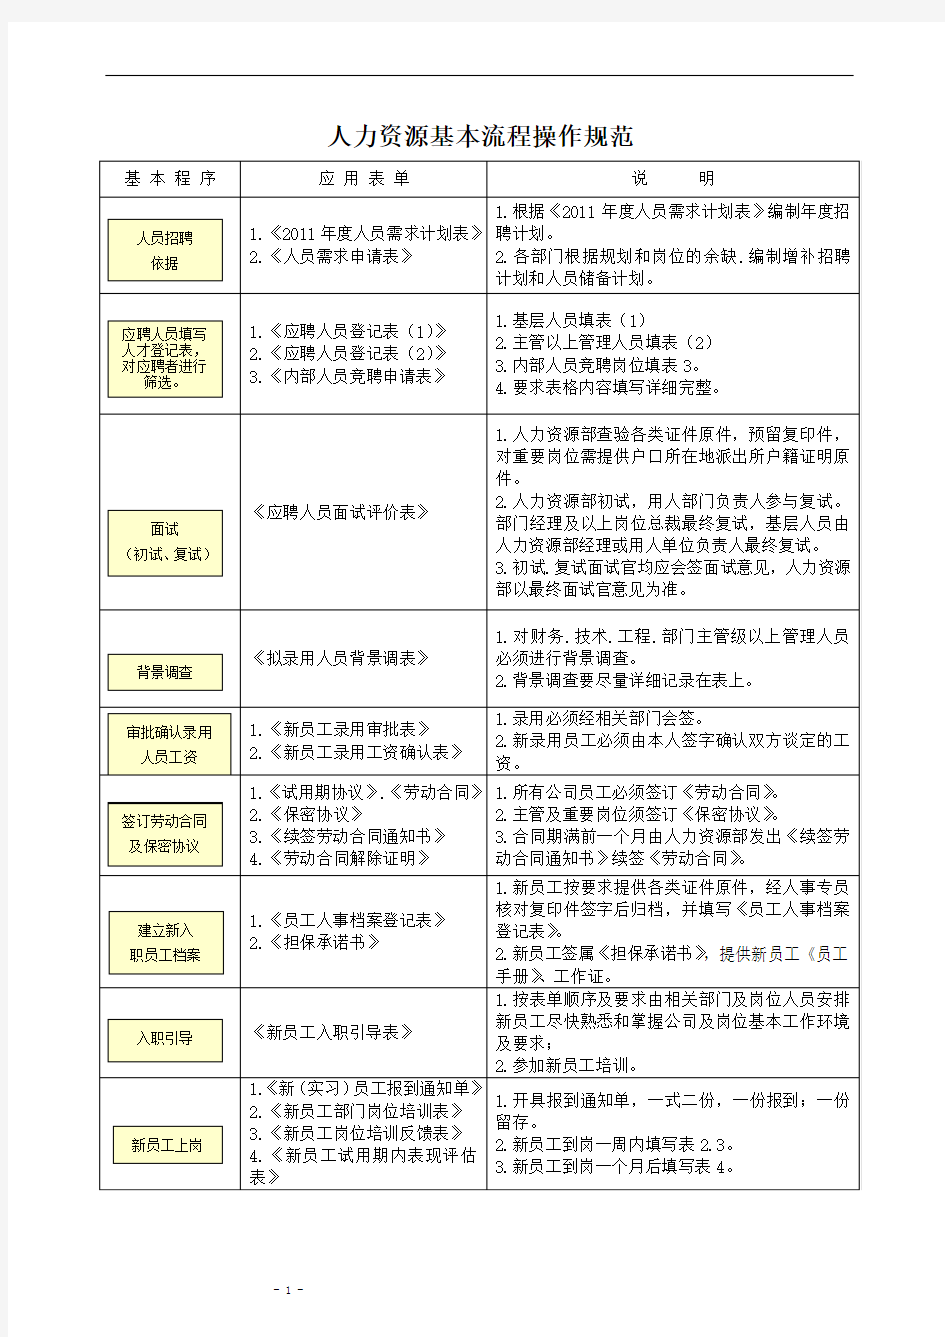 【2013招聘面试必备】HR精美实用表单